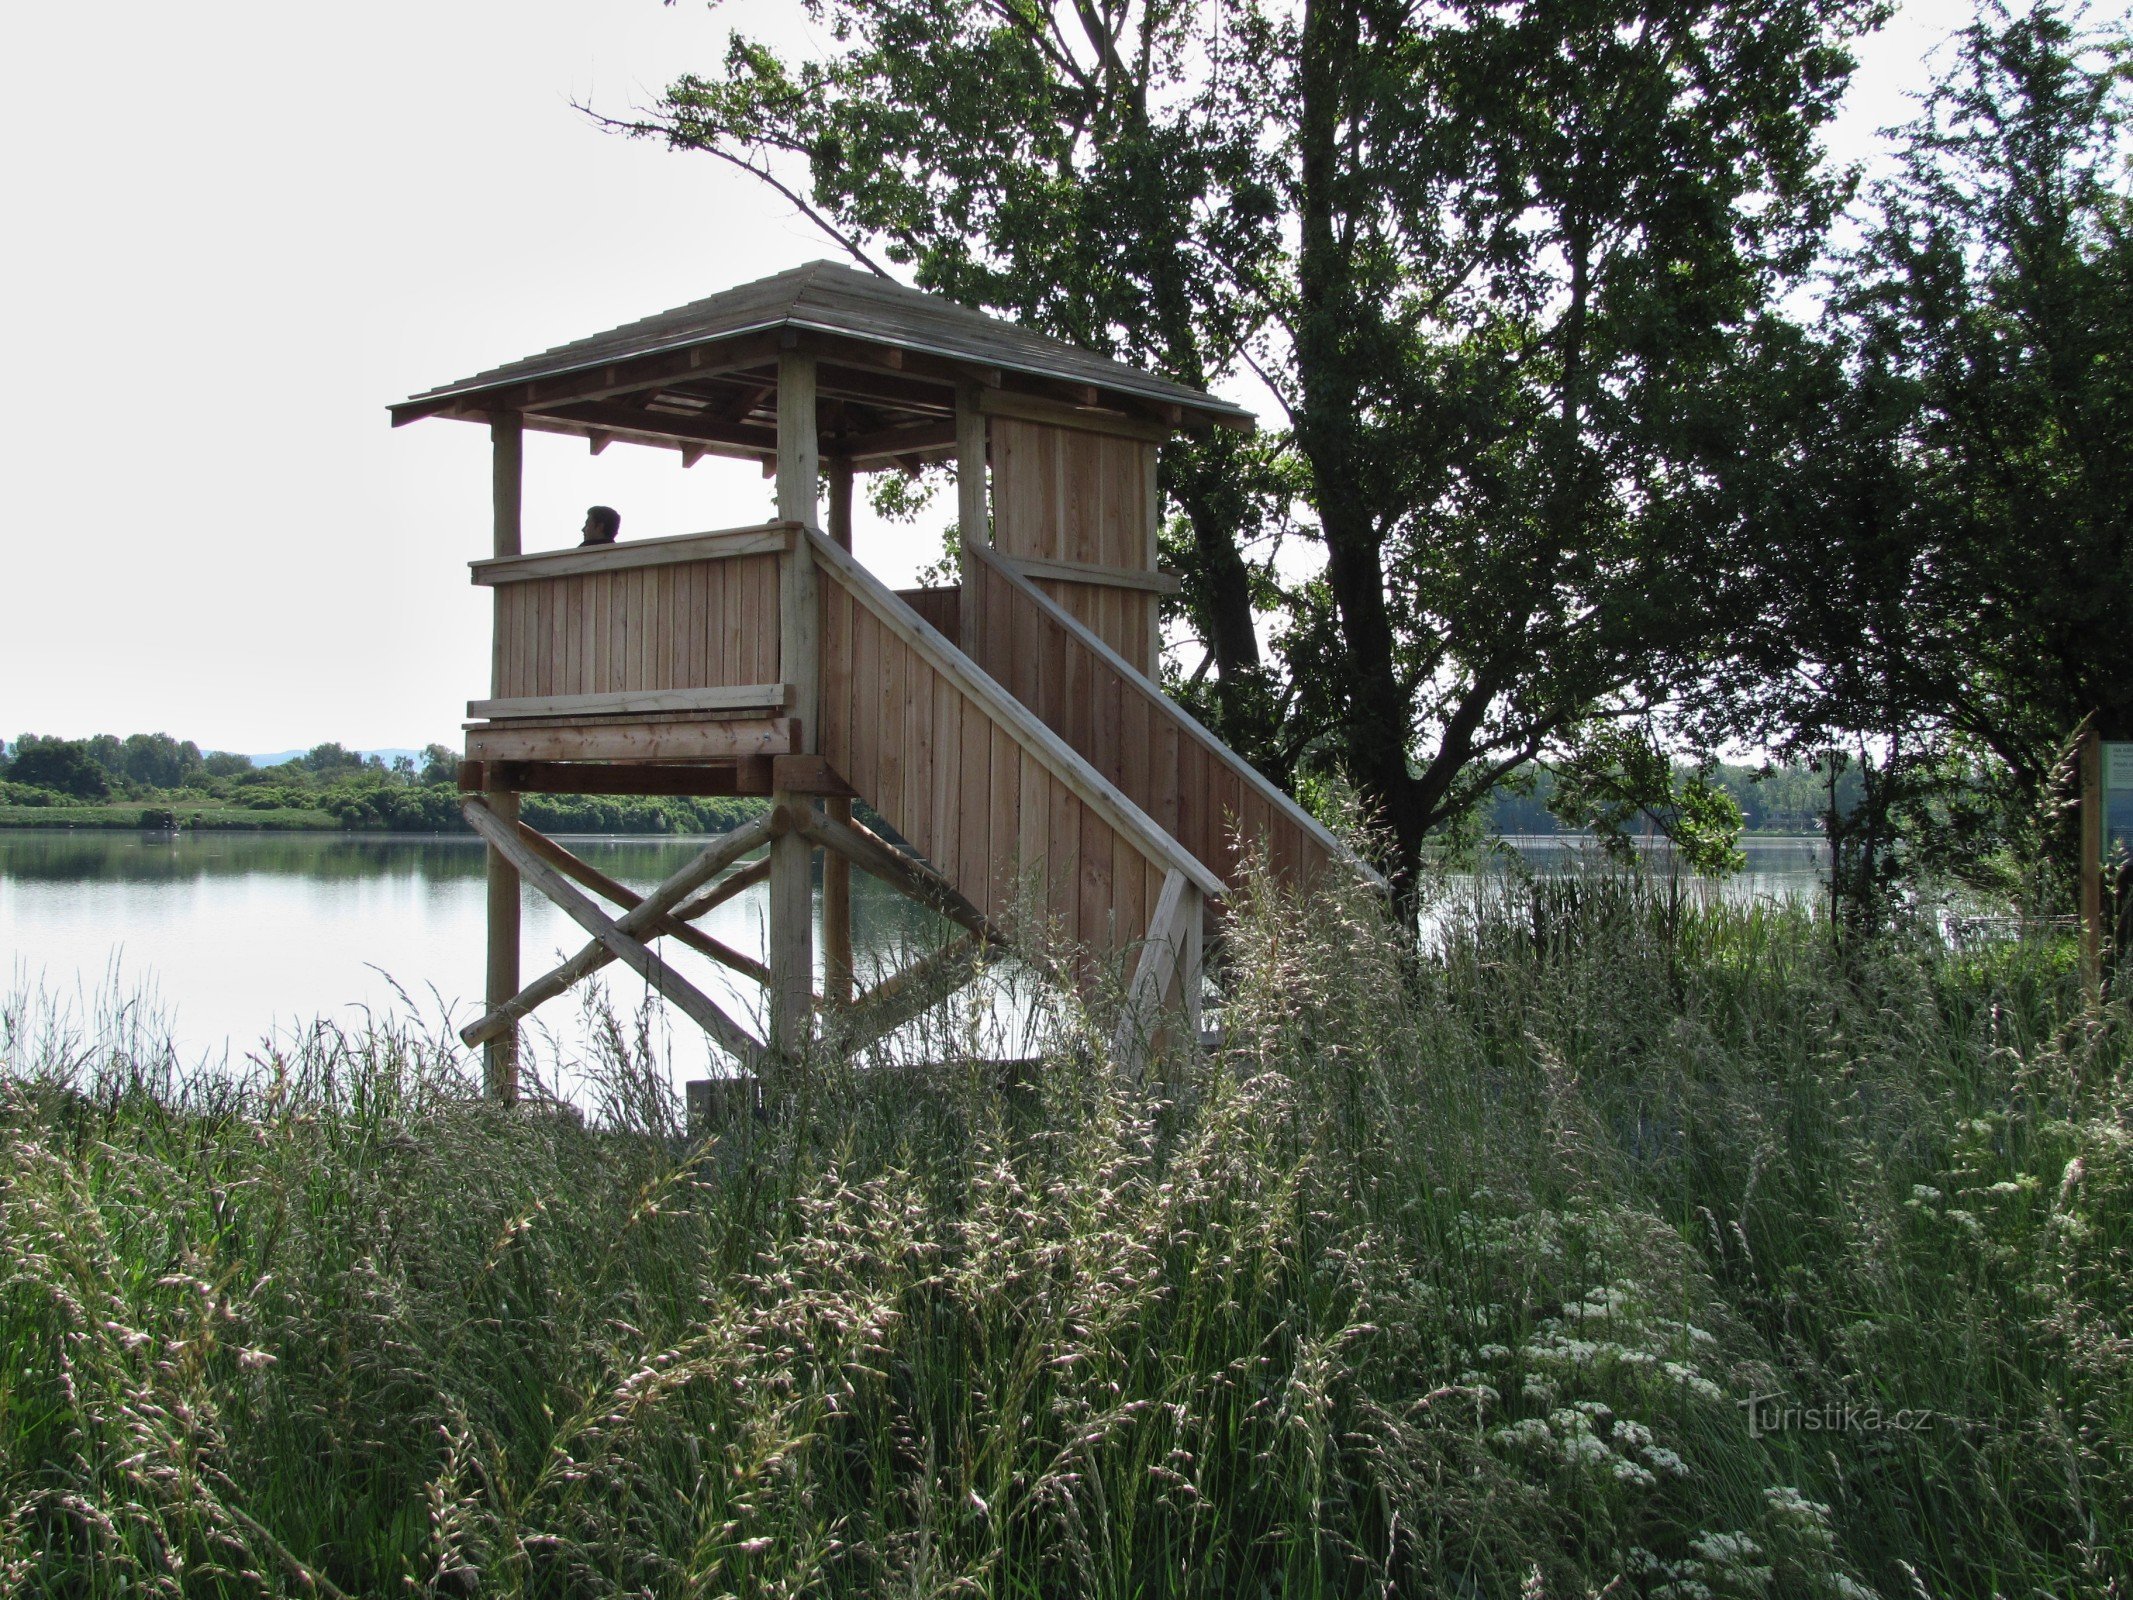 Chomoutov (lähellä Olomoucia) - lintuobservatorio Chomoutov-järvellä